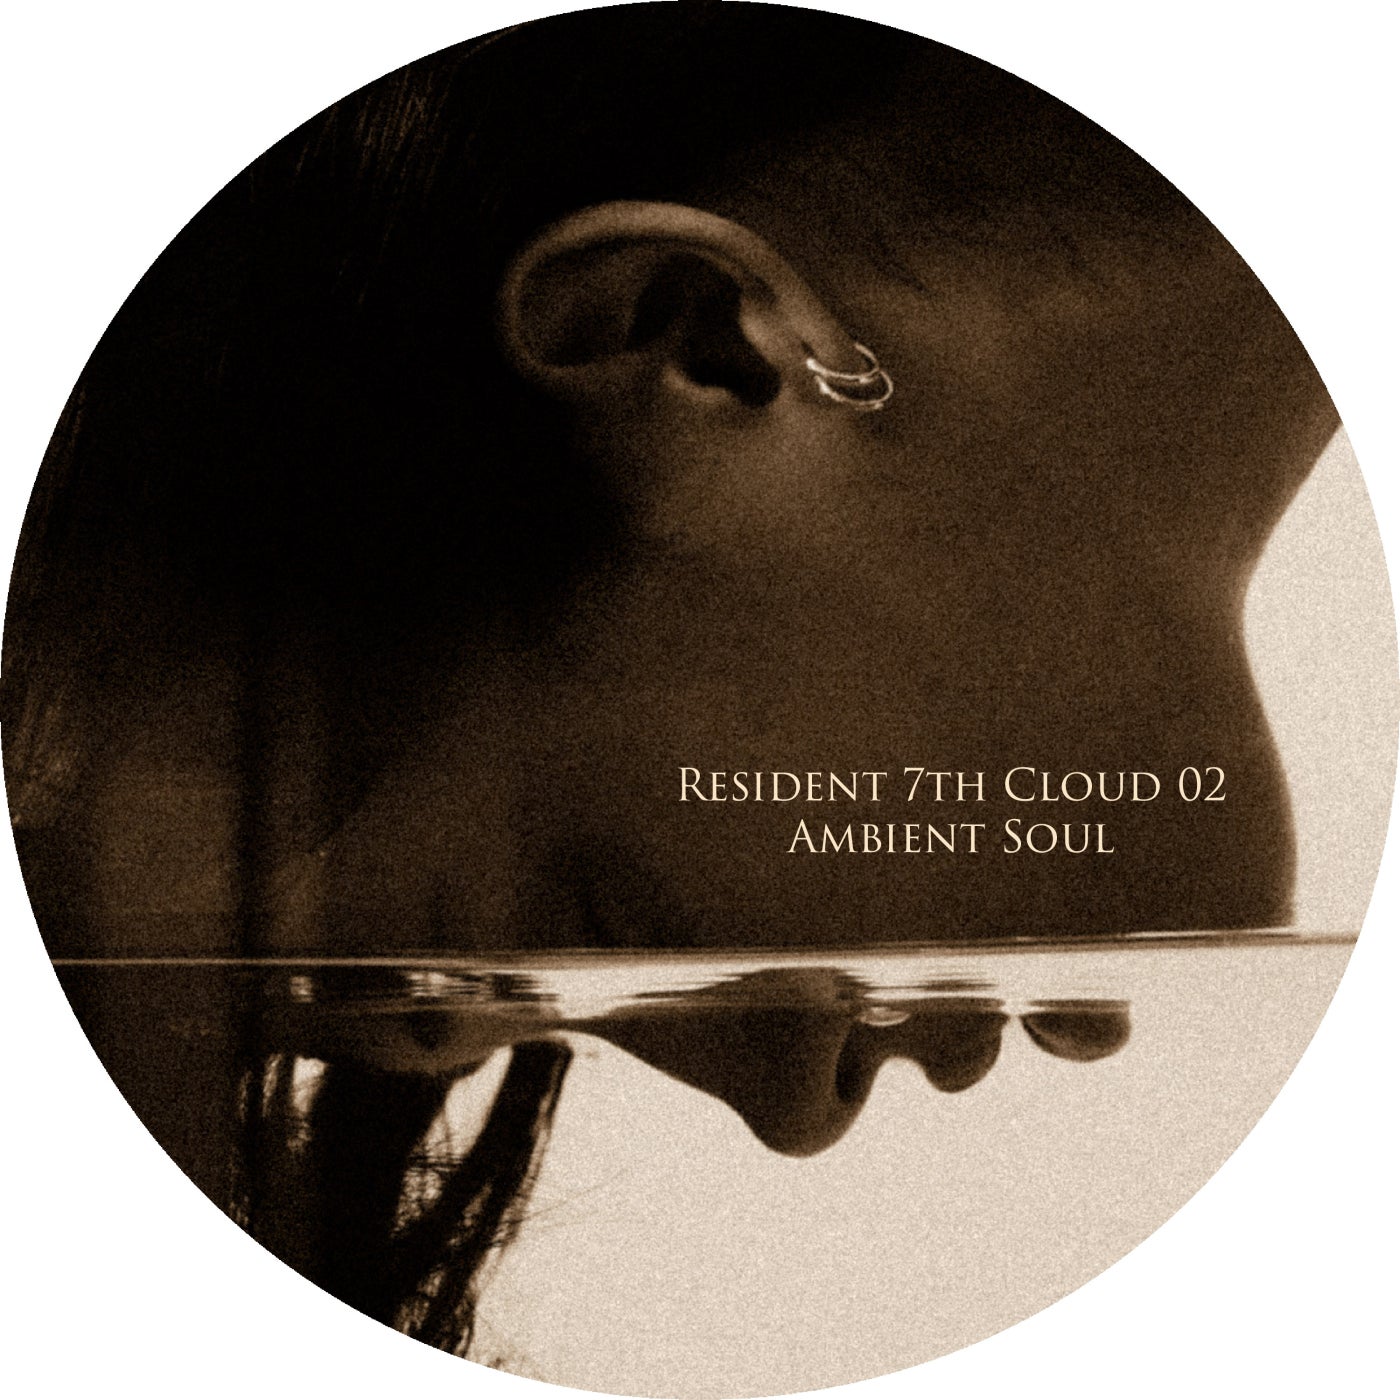 Ambient Soul – Resident 7th Cloud 02 – Ambient Soul [7CLOUD1157]